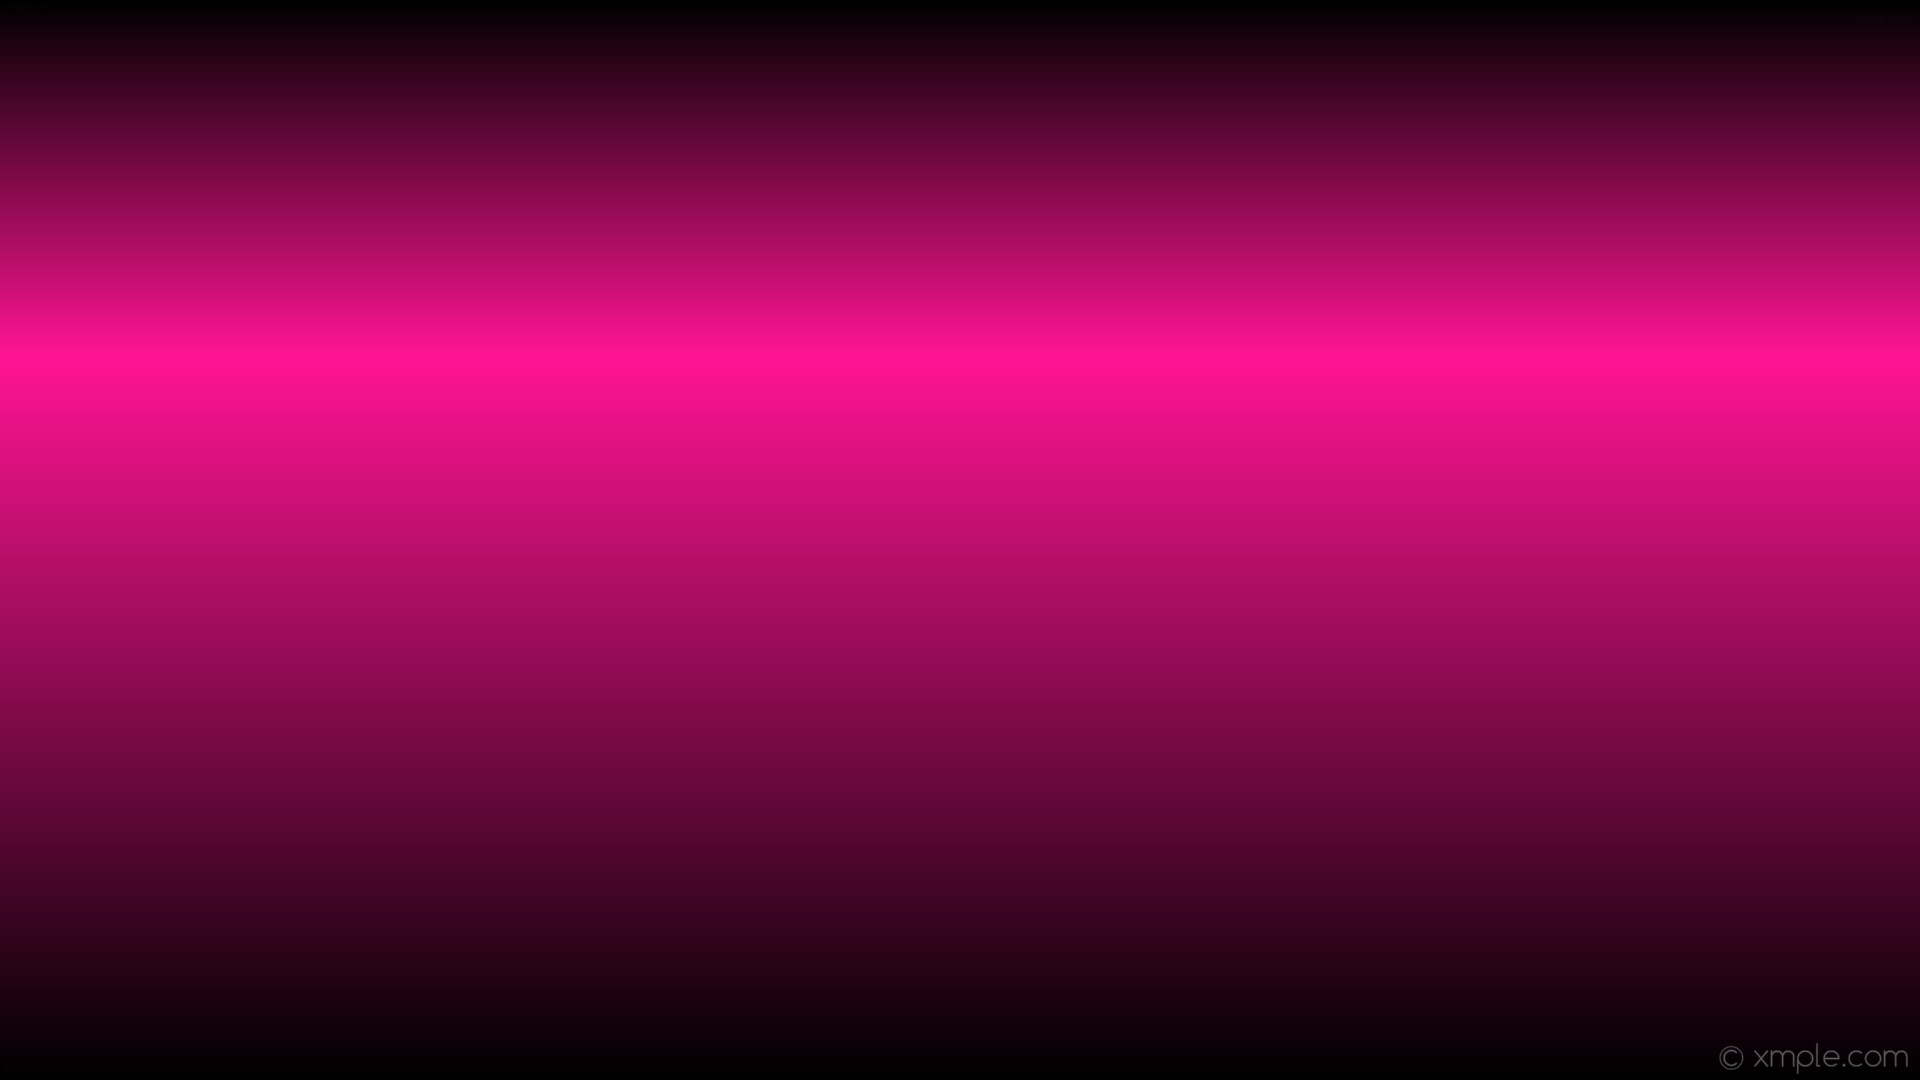 Wallpaper pink black linear gradient highlight deep pink #ff1493 270 67